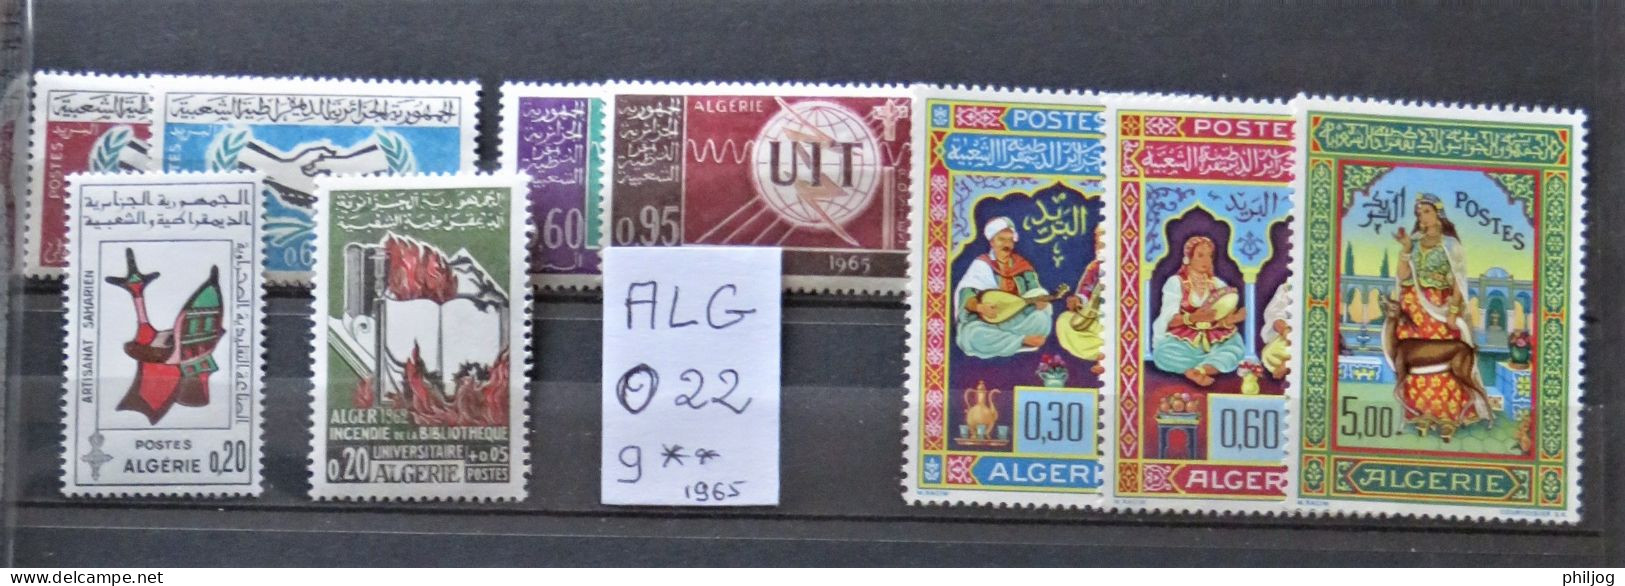 Algérie - Année Complète 1965 Neuve AVEC Charnière - Yvert 405 à 413 - Algérie (1962-...)